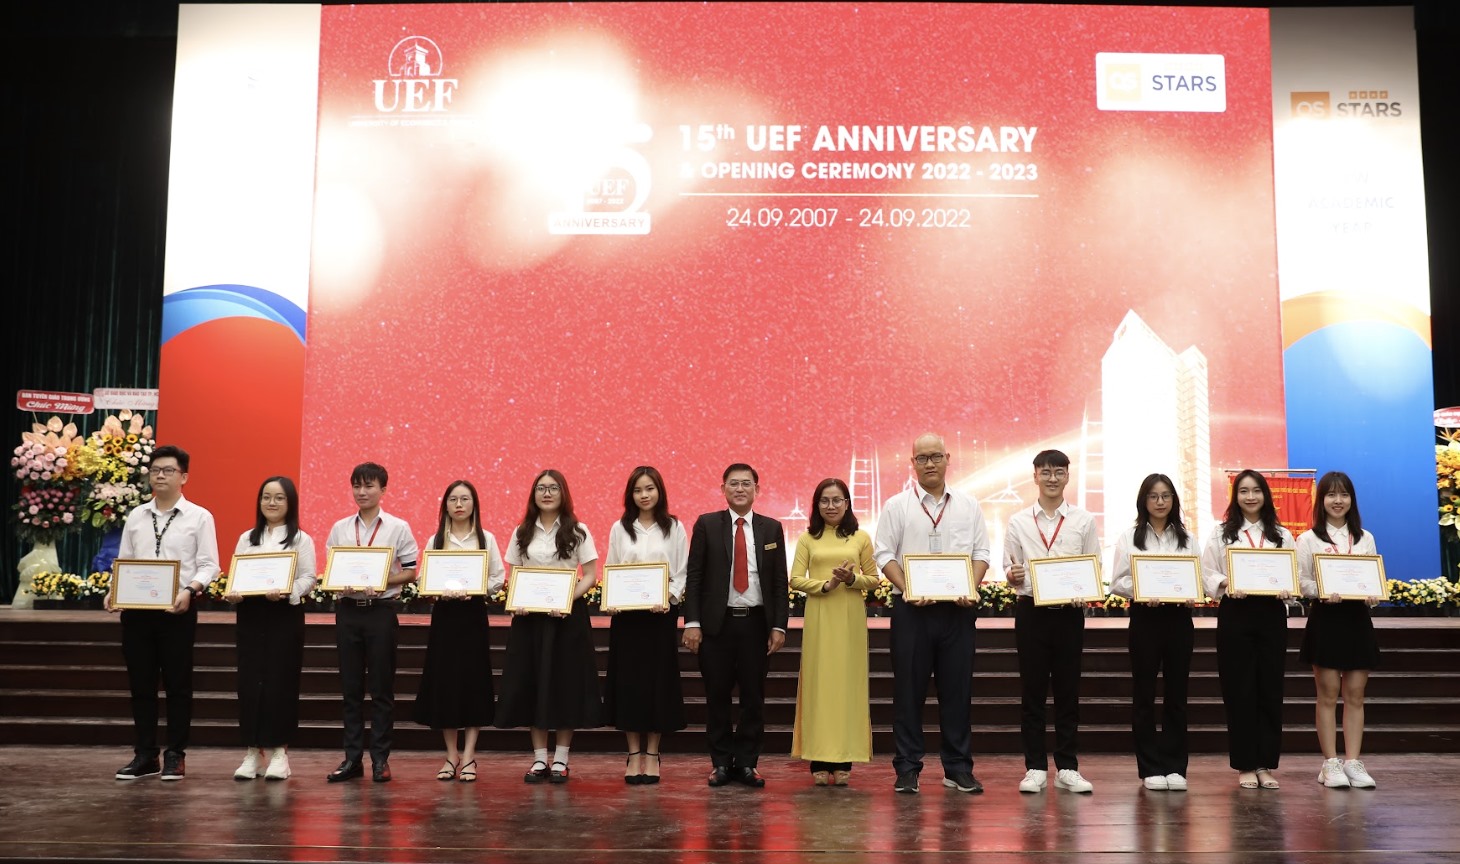 Sinh viên Trần Tấn Đạt, Hà Vân Trang và các bạn sinh viên xuất sắc nhận học bổng. Ảnh: